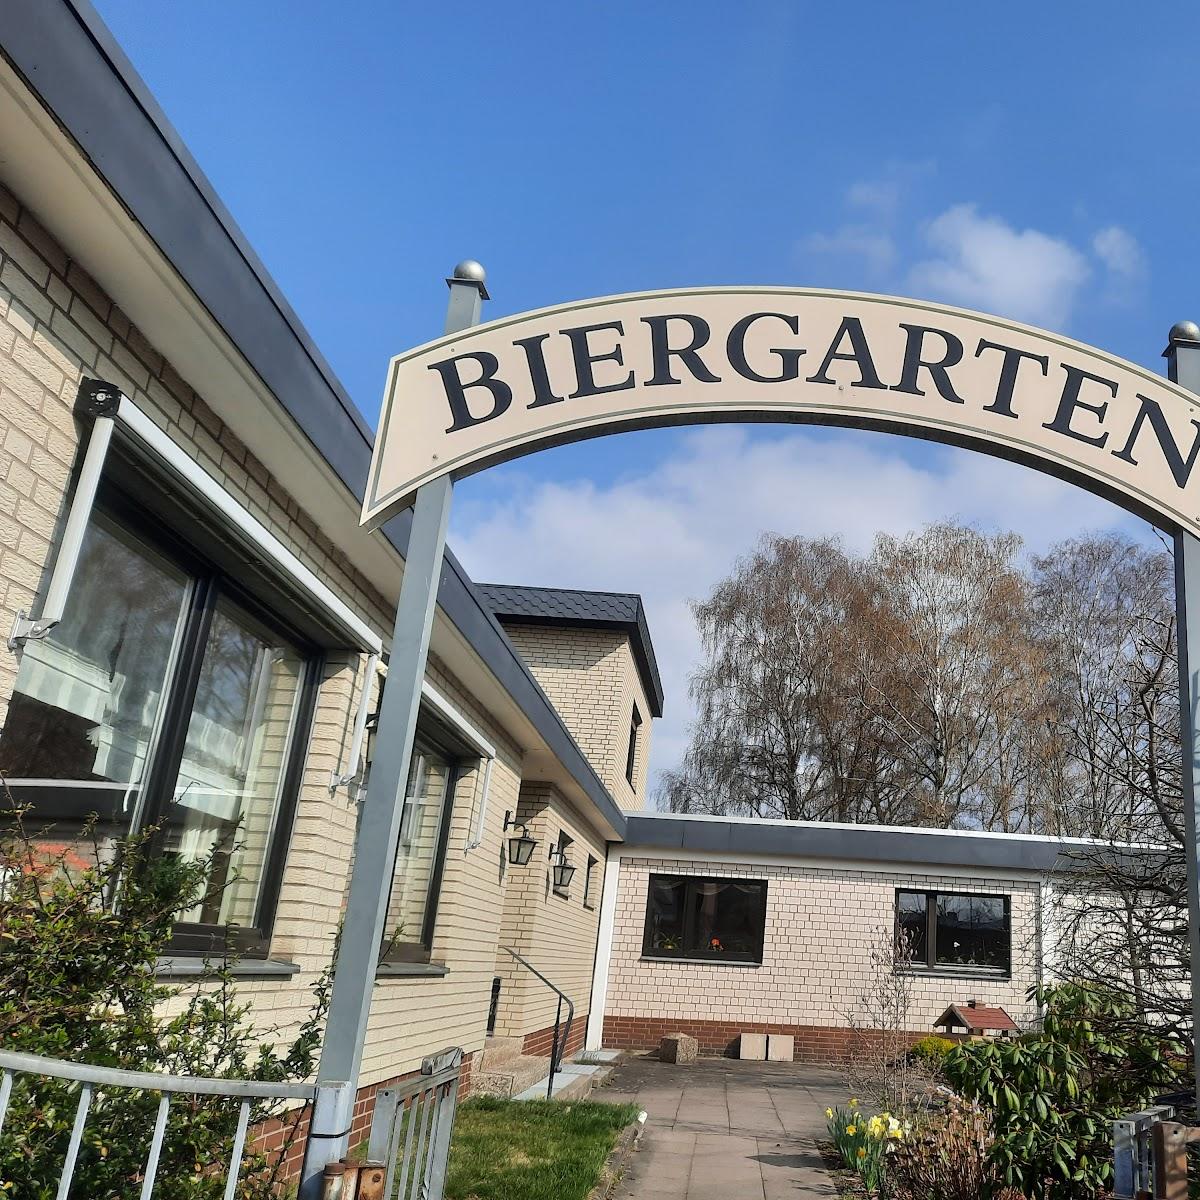 Restaurant "Hotel + Restaurant Wehrmann -Blume" in Wunstorf